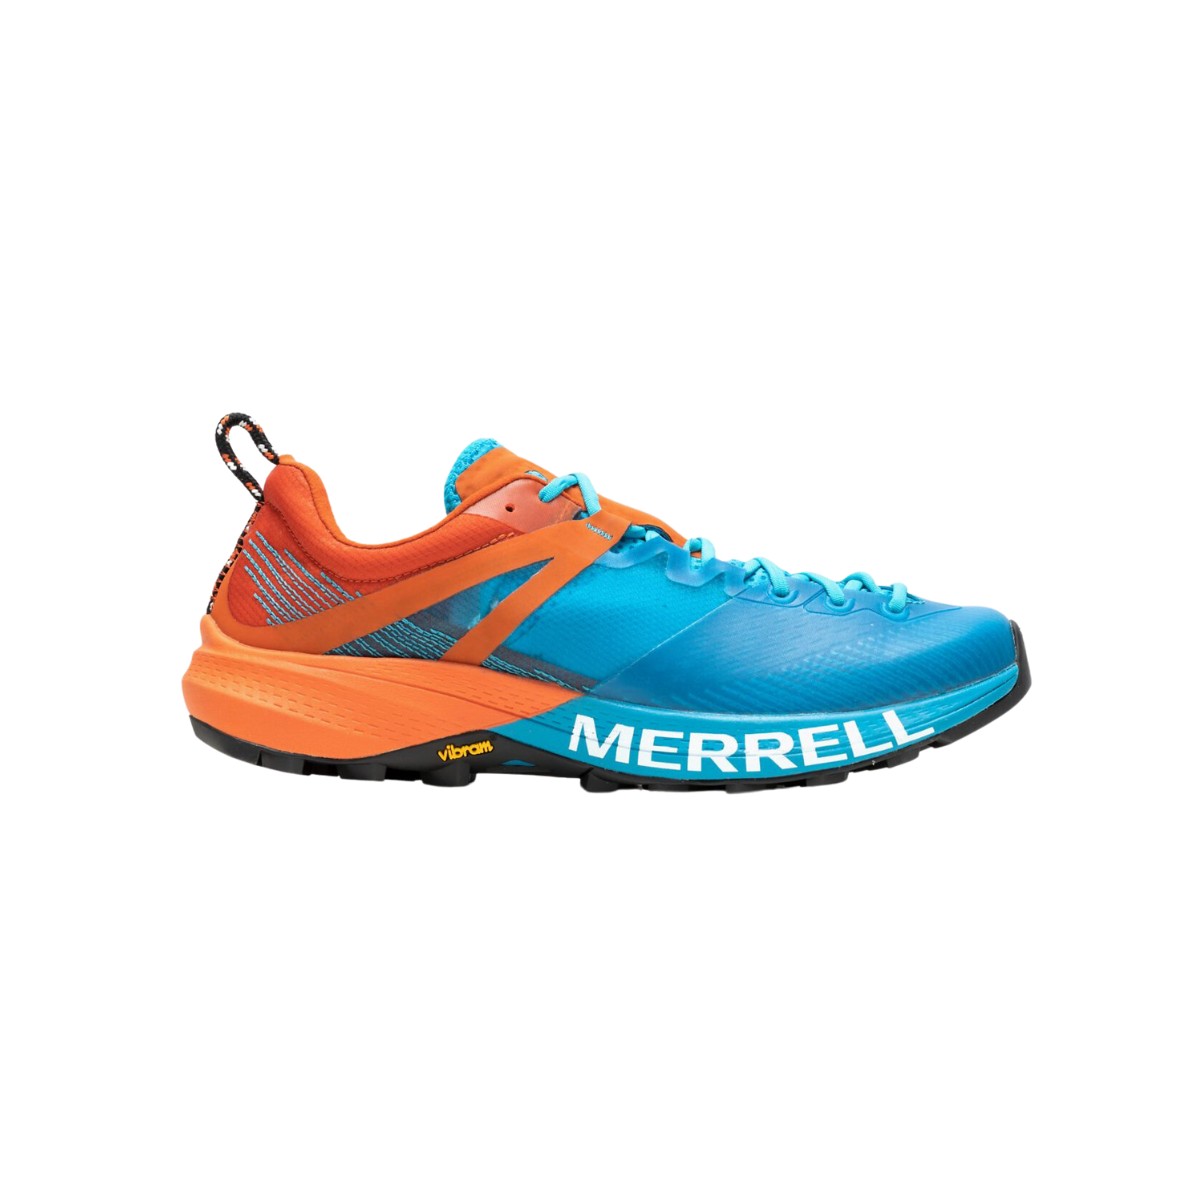 Merrell MTL MQM Blau Orange Schuhe AW23, Größe 41,5 - EUR